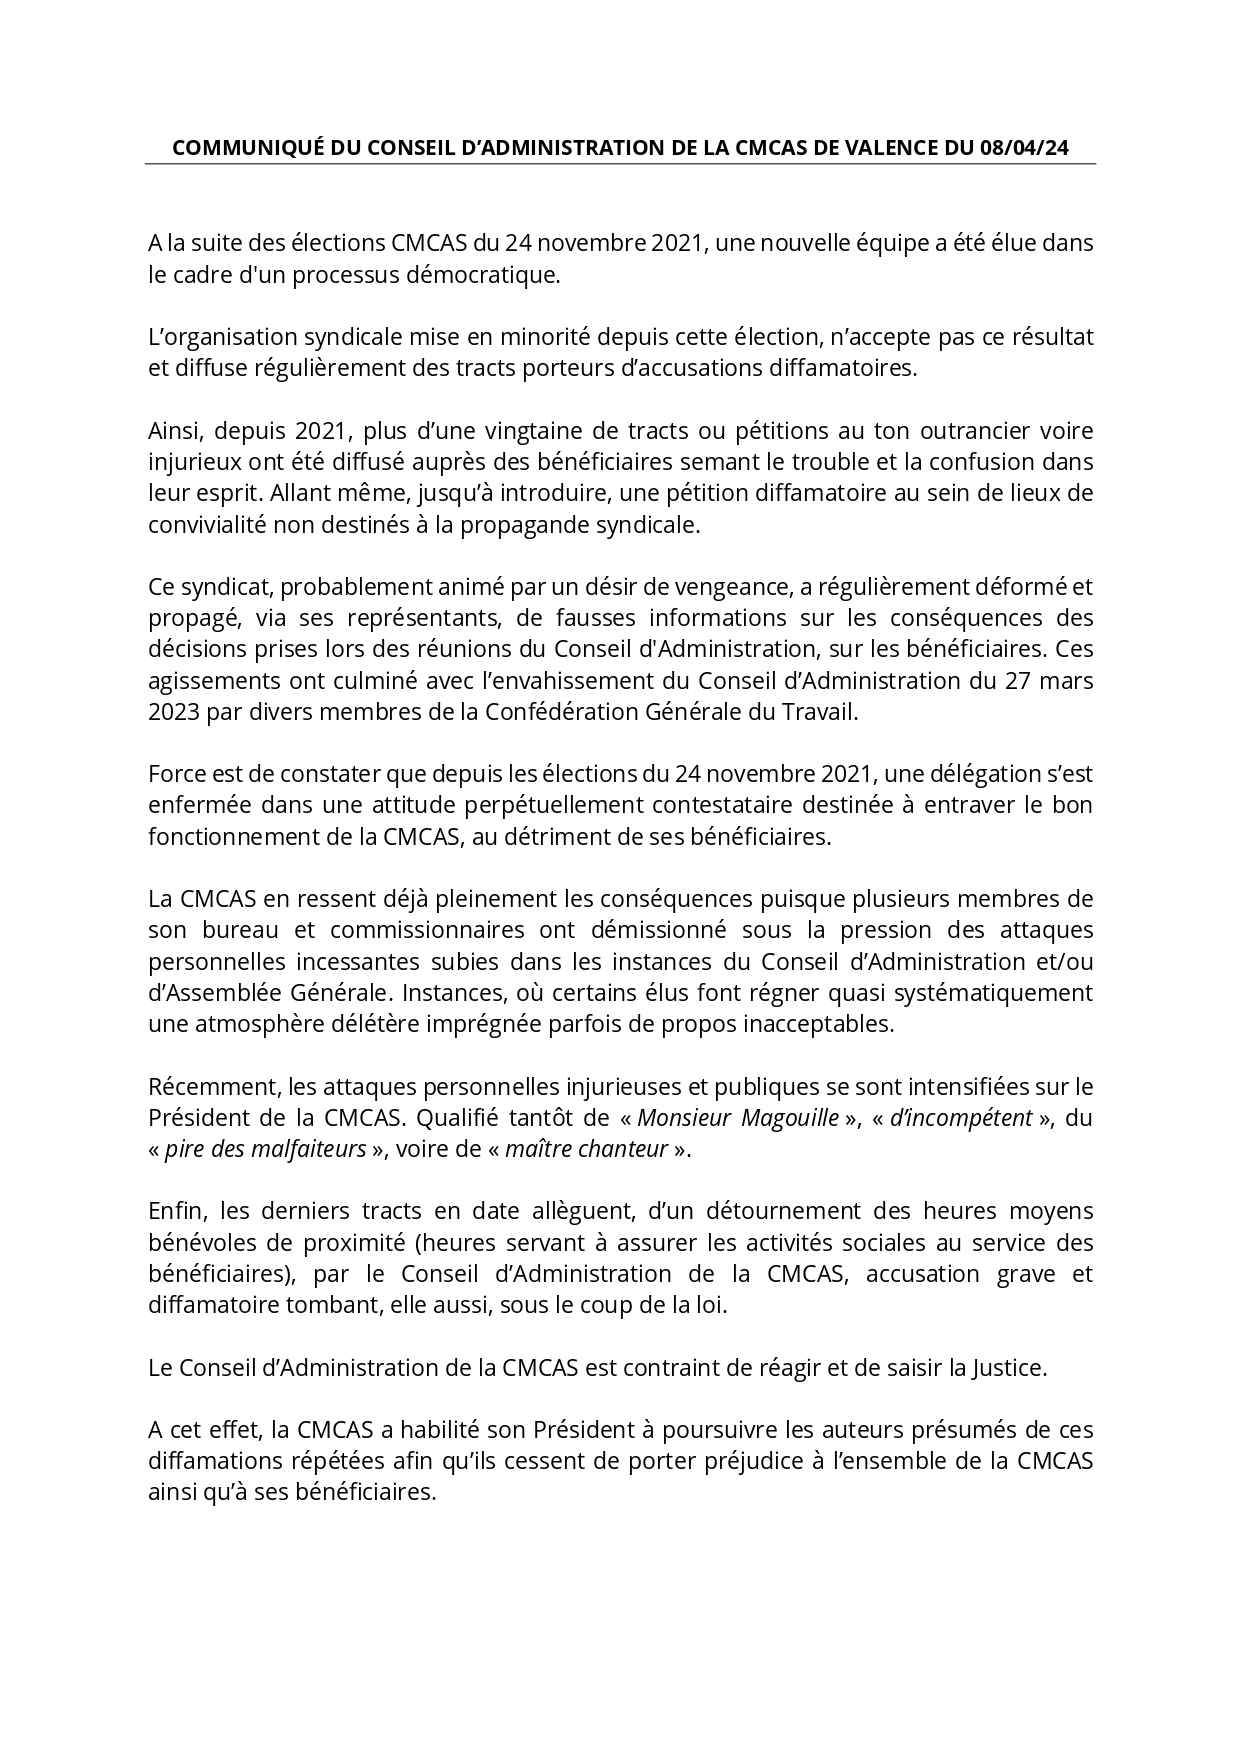 Communiqué du conseil d'administration de la CMCAS Valence du 08/04/2024